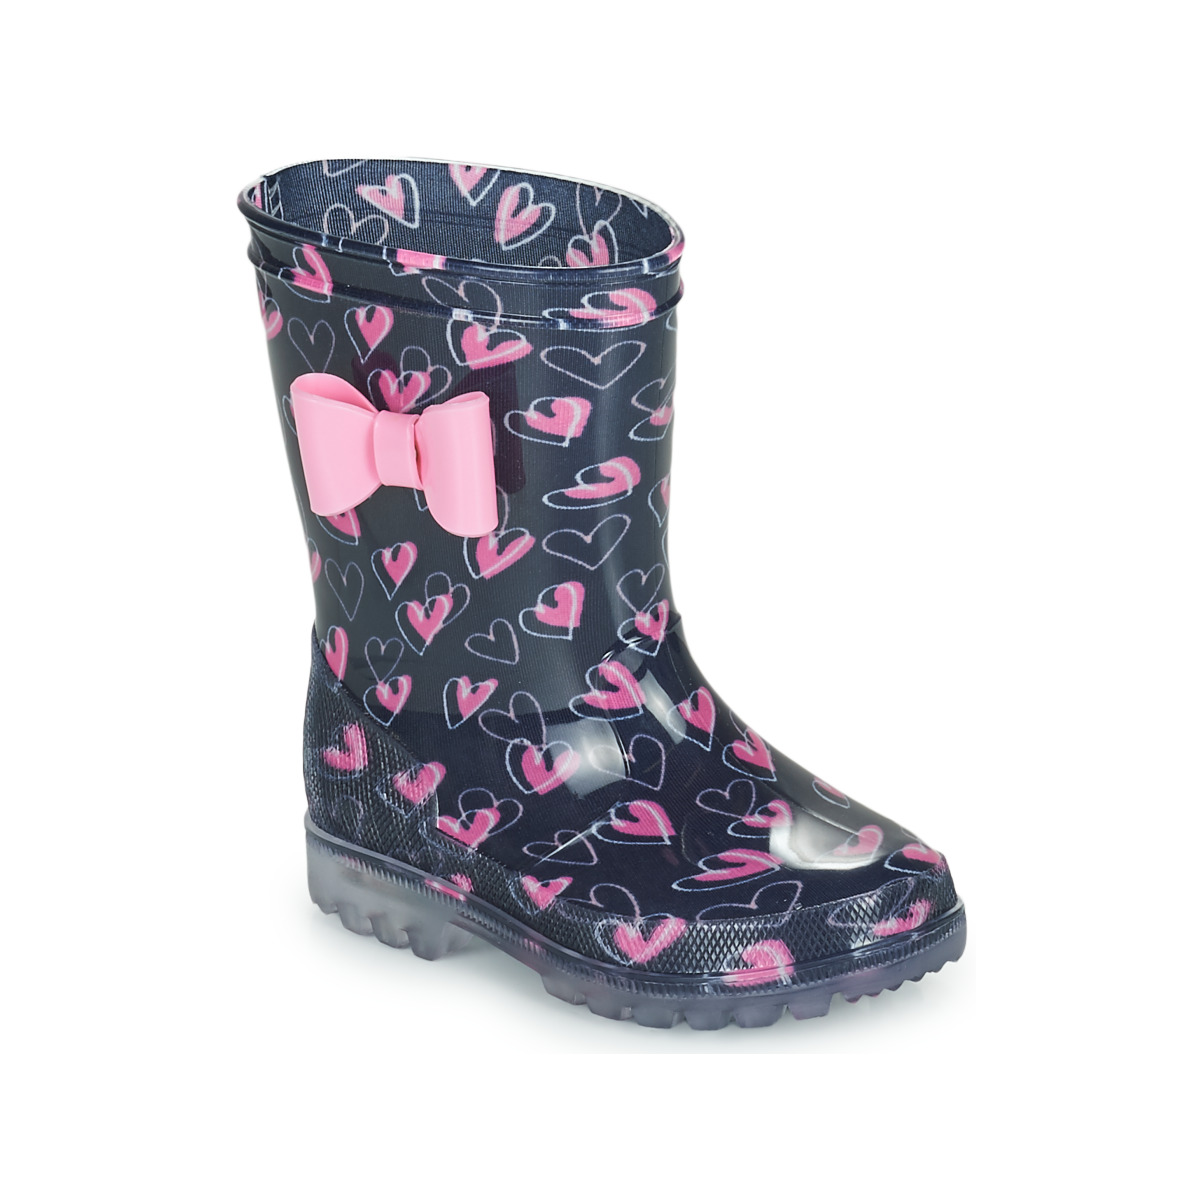 Παπούτσια Κορίτσι Μπότες βροχής Be Only LOVANA FLASH Ροζ / Marine